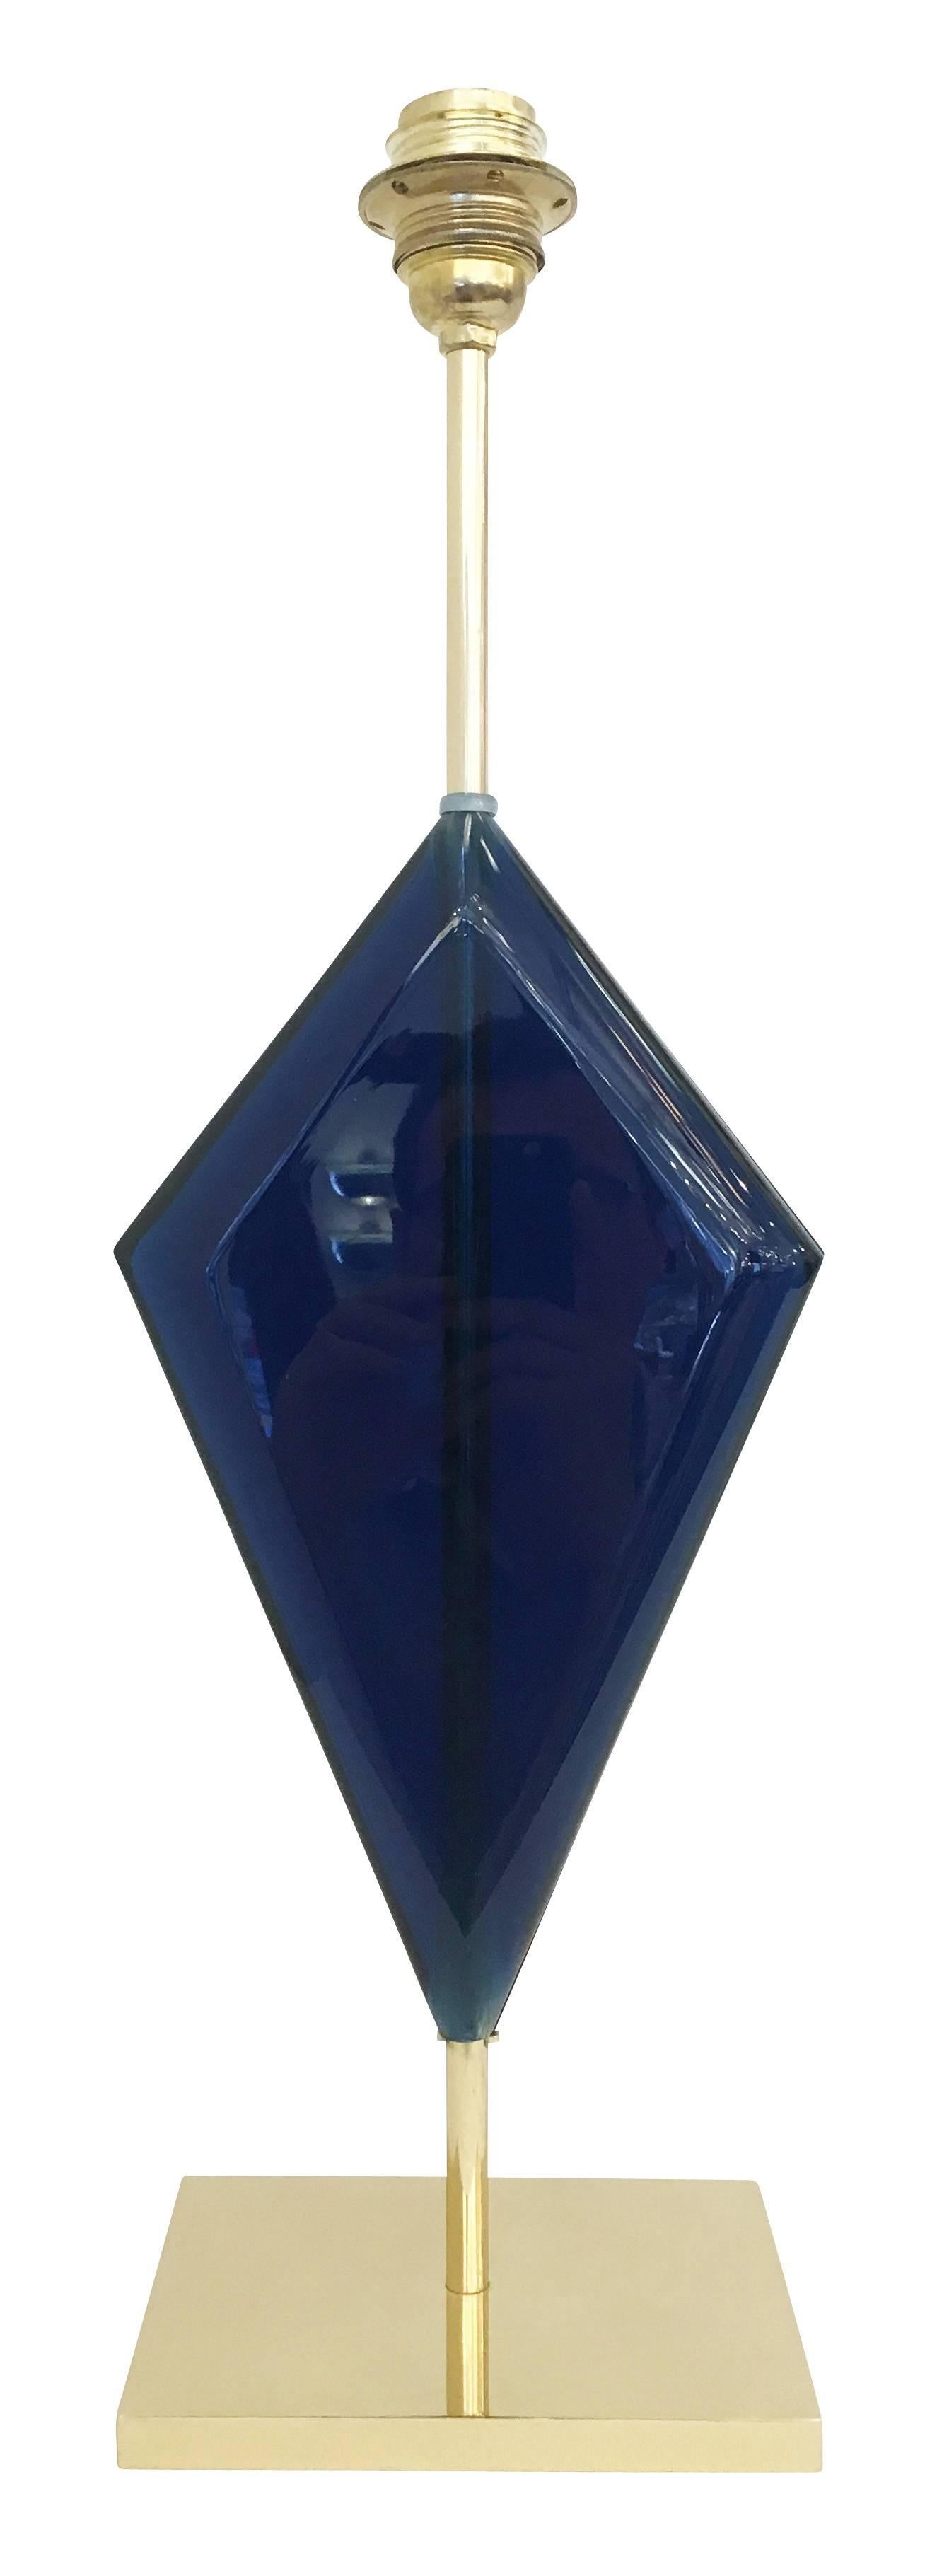 Tischlampen aus Glas in limitierter Auflage, hergestellt vom Glaskünstler Effetto Vetro für Gaspare Asaro. Jede Lampe ist aus dunkelblauen Glasplatten handgeschnitzt, die miteinander verklebt wurden. Der Stiel und der Sockel sind aus Messing. Preis